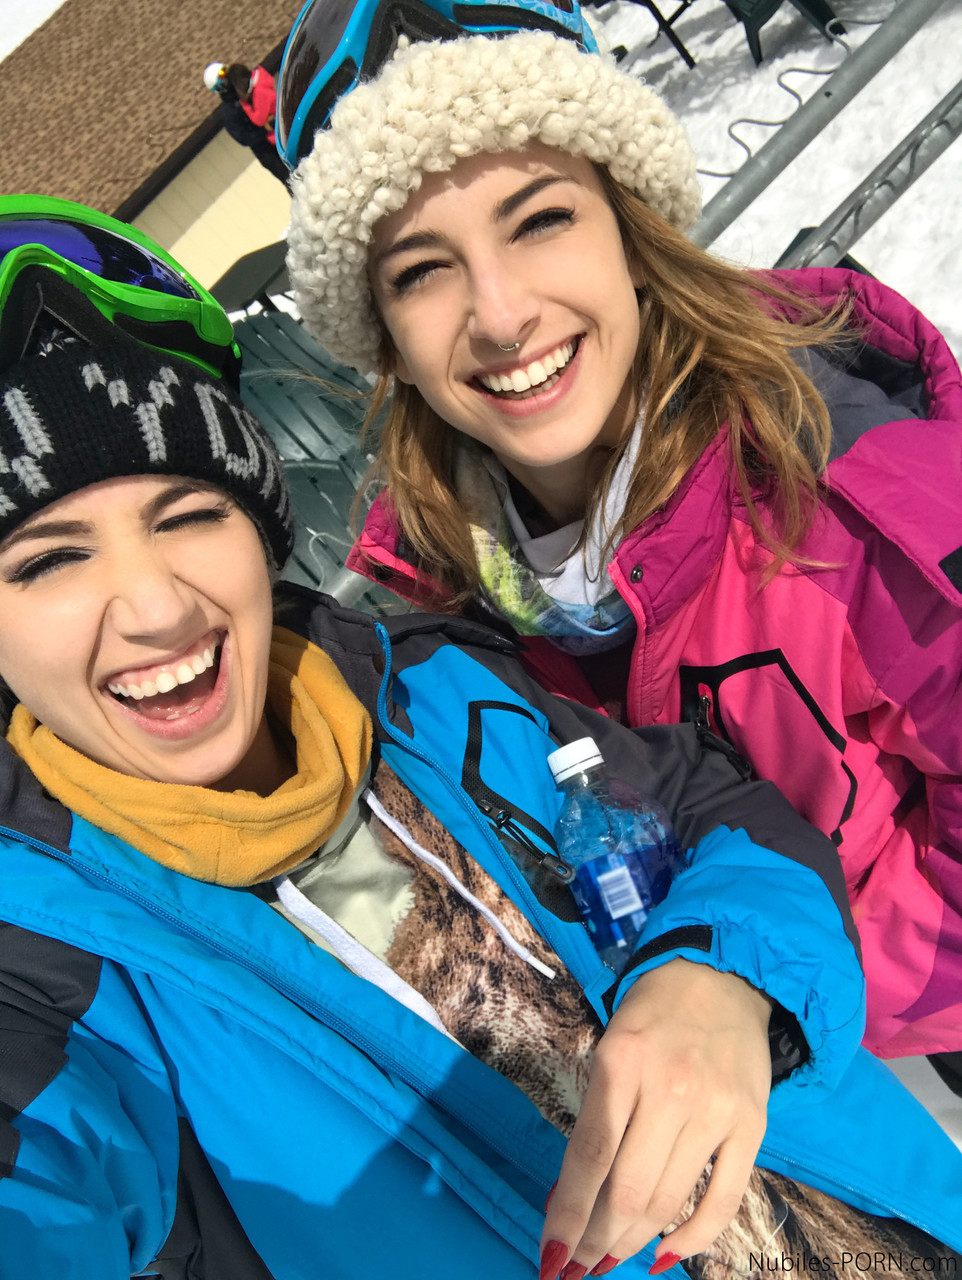 Sexy snowboarders Sierra Nicole & Kristen Scott have pre-FFM fun on the slopes photo porno #427844868